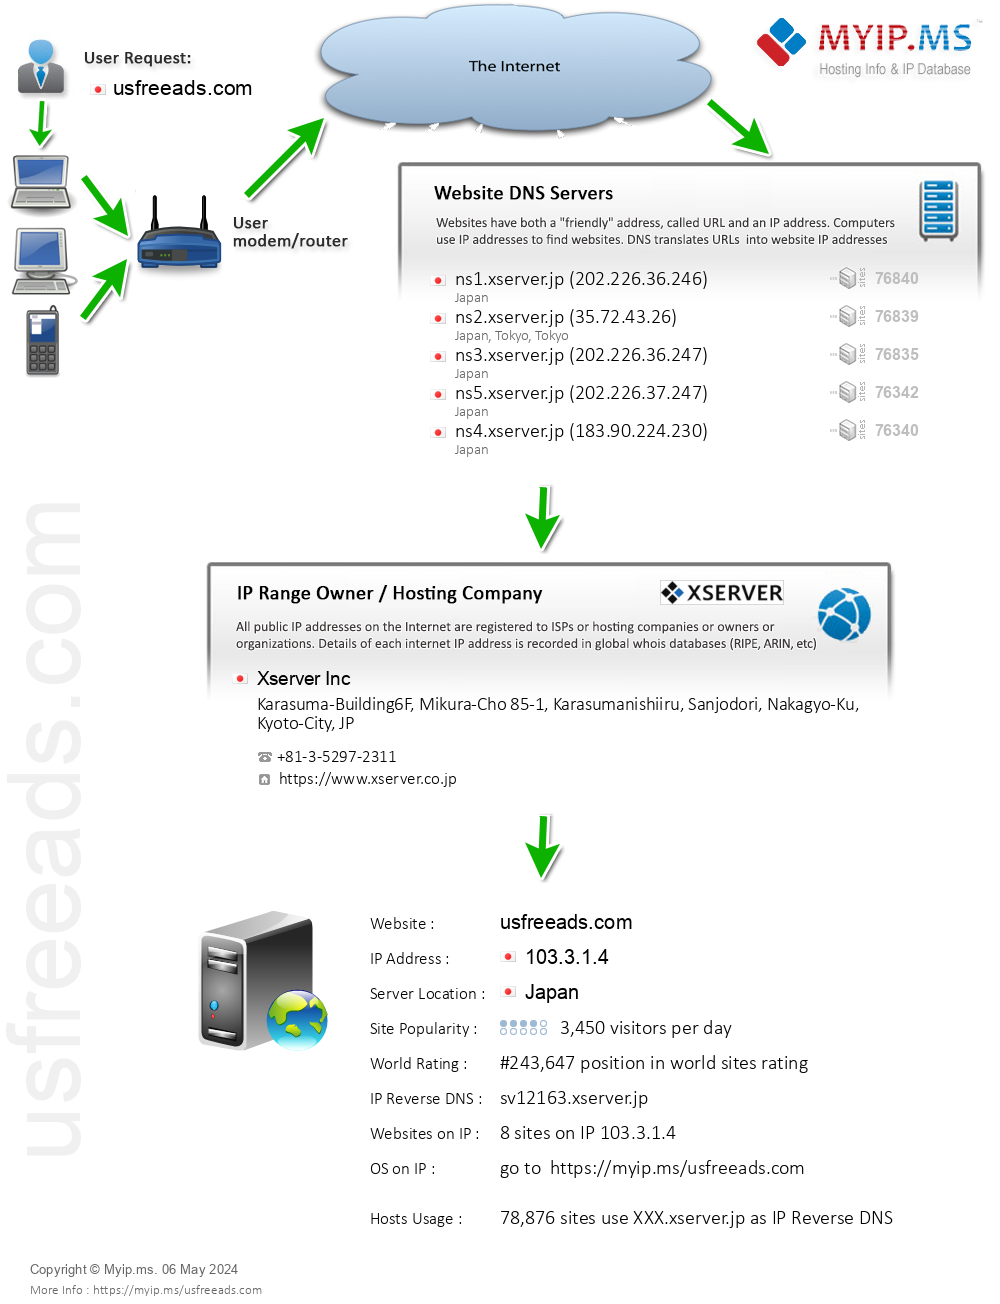 Usfreeads.com - Website Hosting Visual IP Diagram